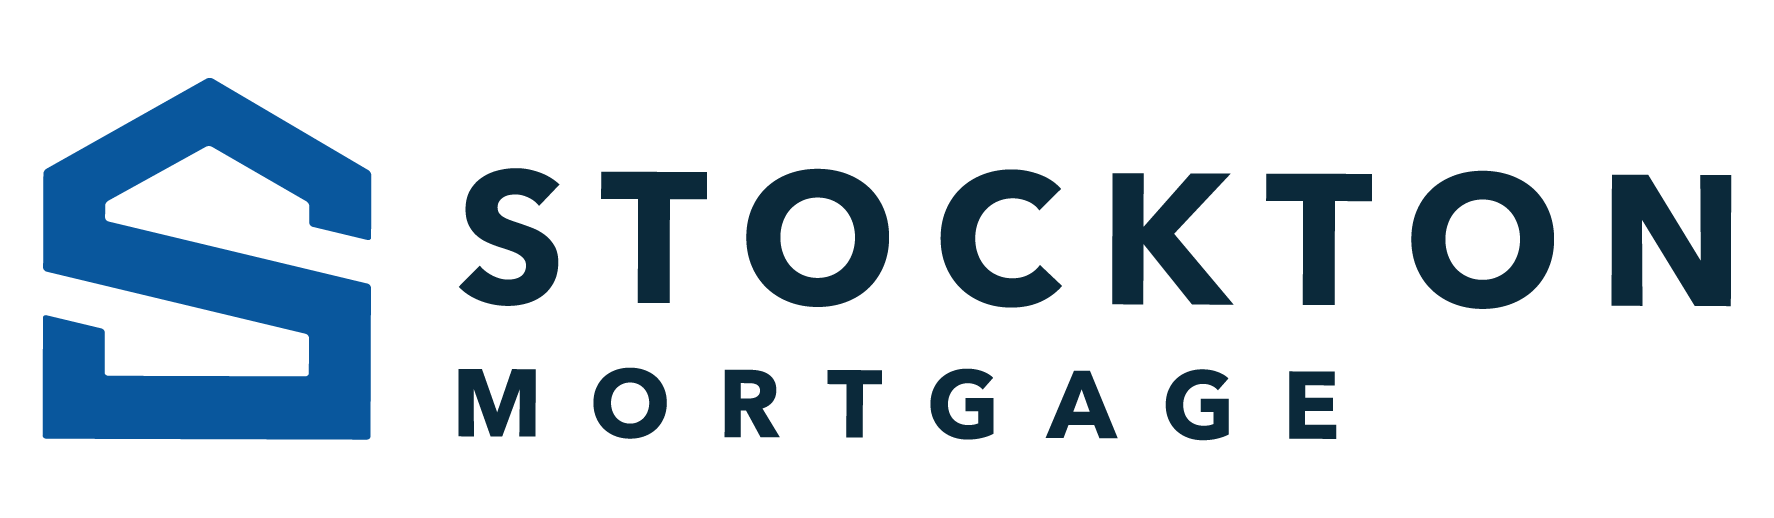 Stockton Mortgage Company Logo